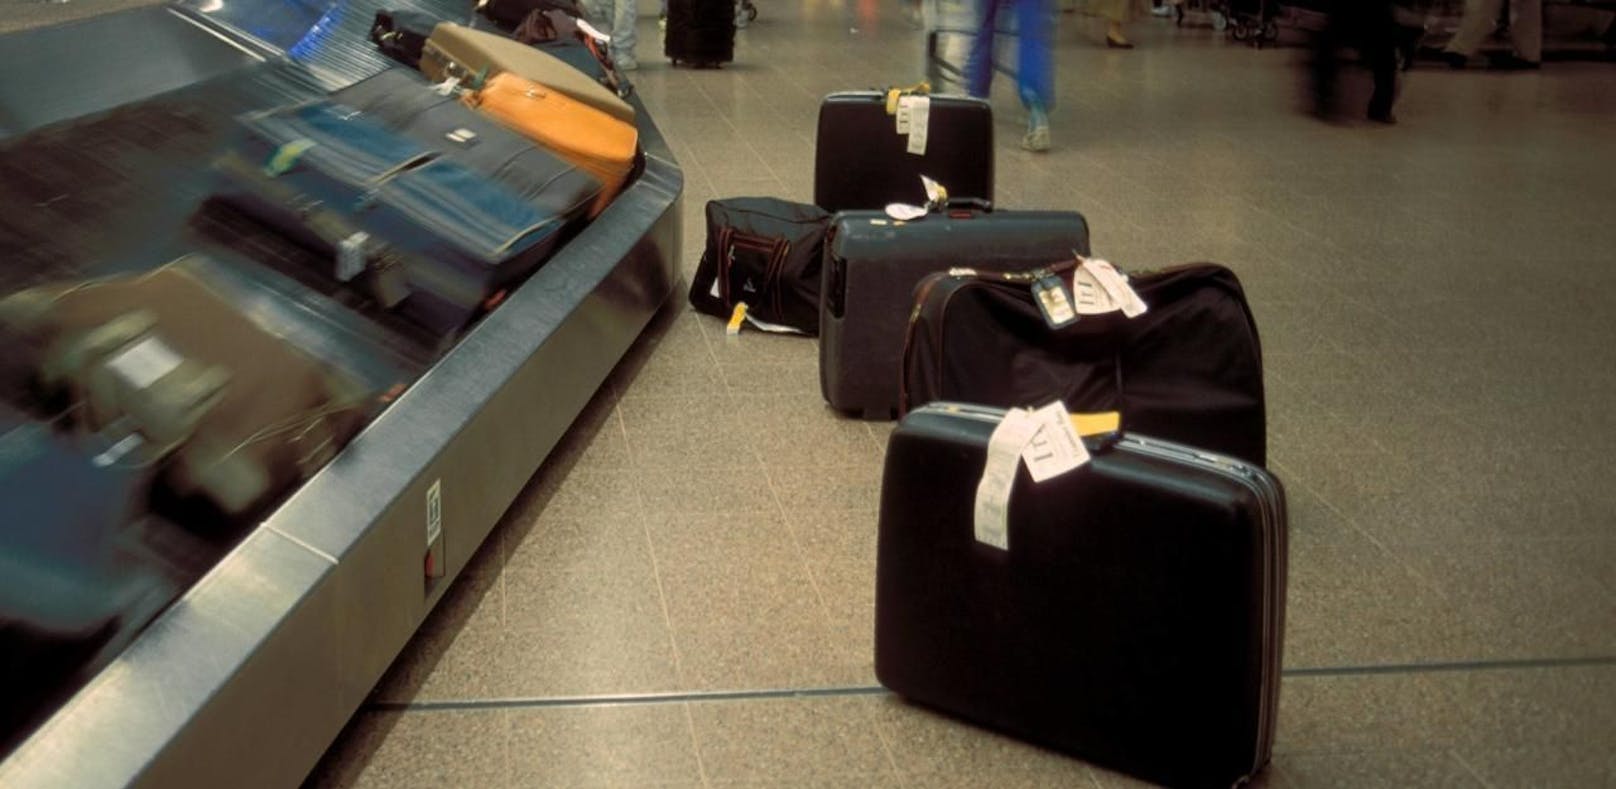 Symbolbild: Gepäckband eines Flughafens